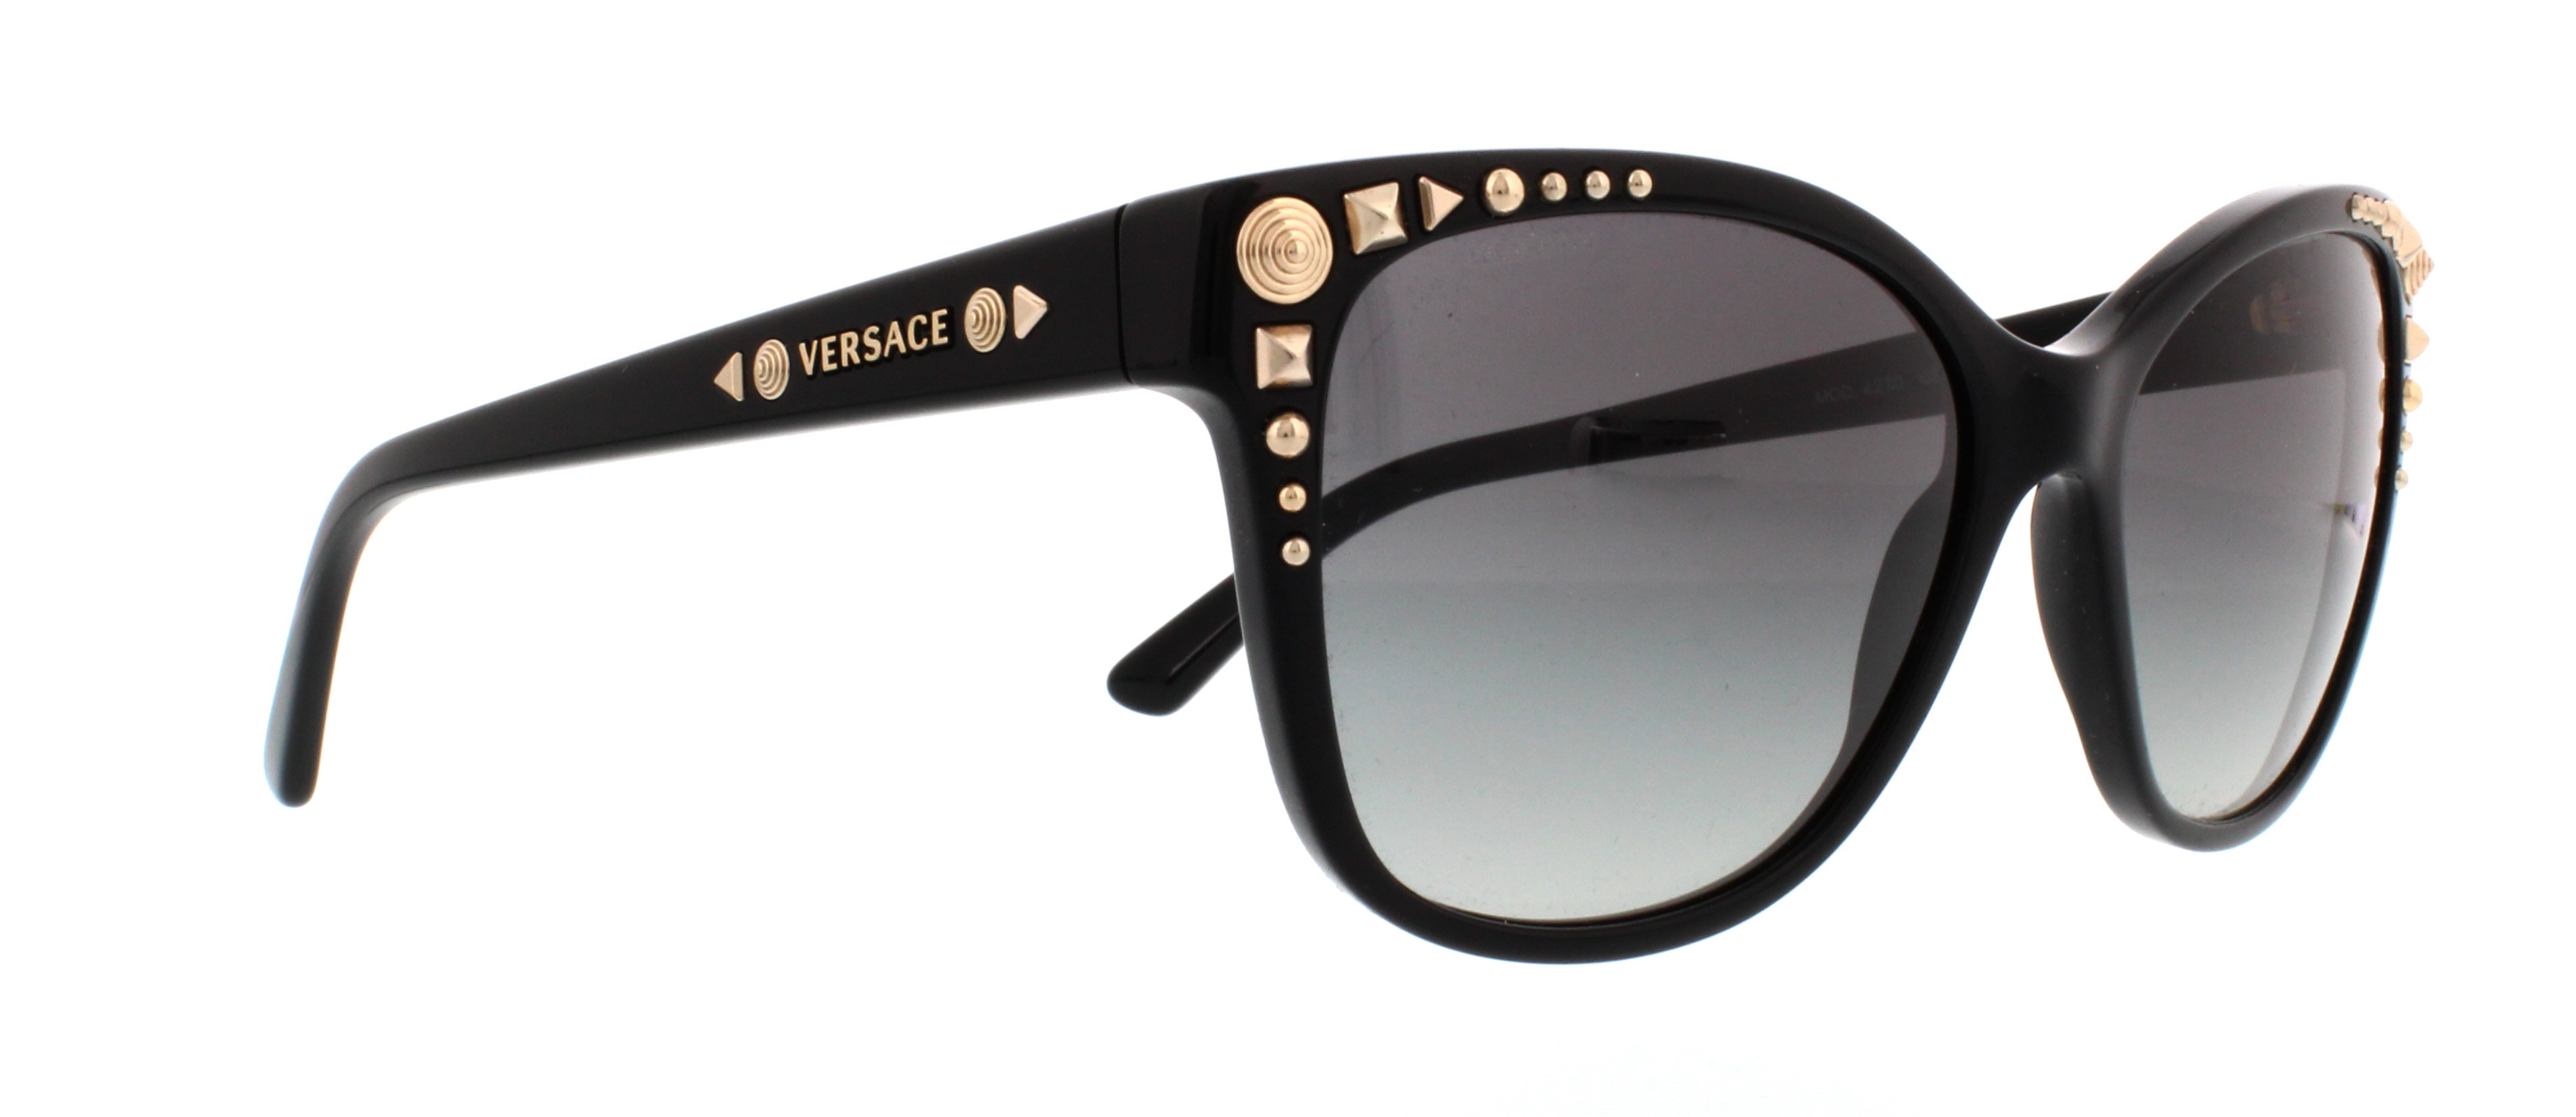 Designer Frames Outlet. Versace Sunglasses VE4270